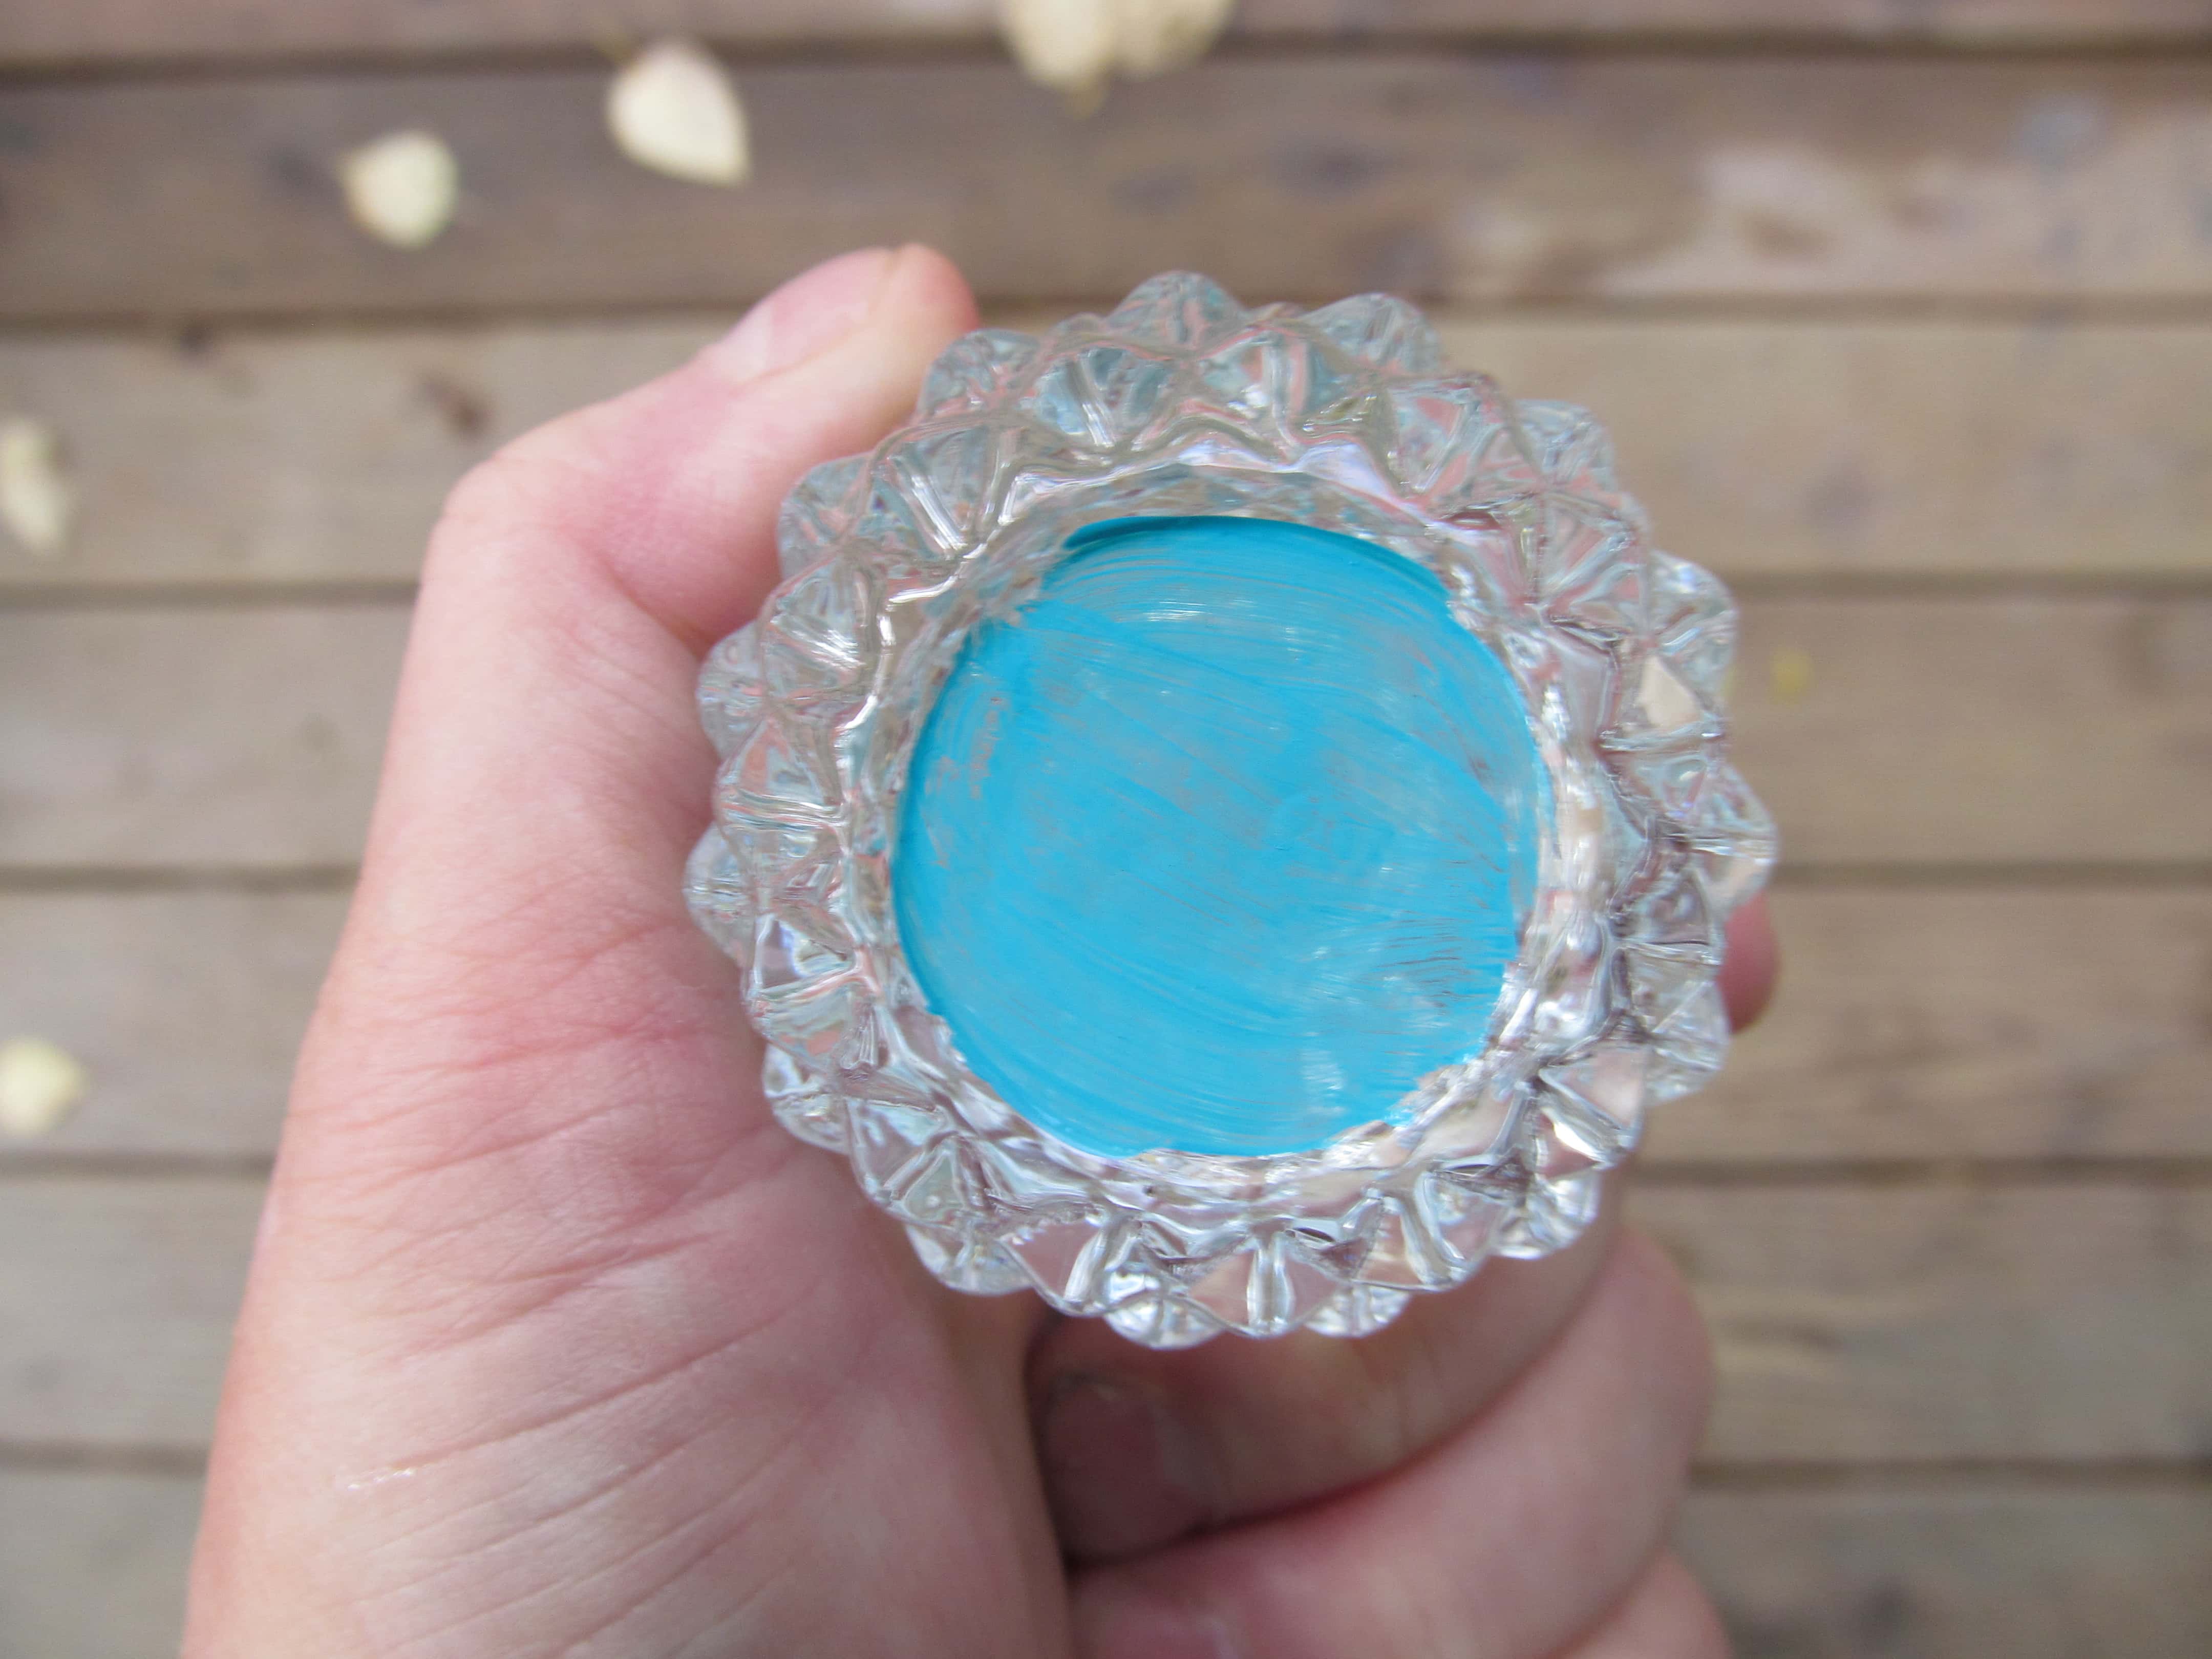 maalattu pohja leikattu lasi kynttilänjalka sinisellä maalilla. Se heijastaa väriä koko lasiin, jolloin kirkas lasi näyttää luonnollisesti siniseltä.